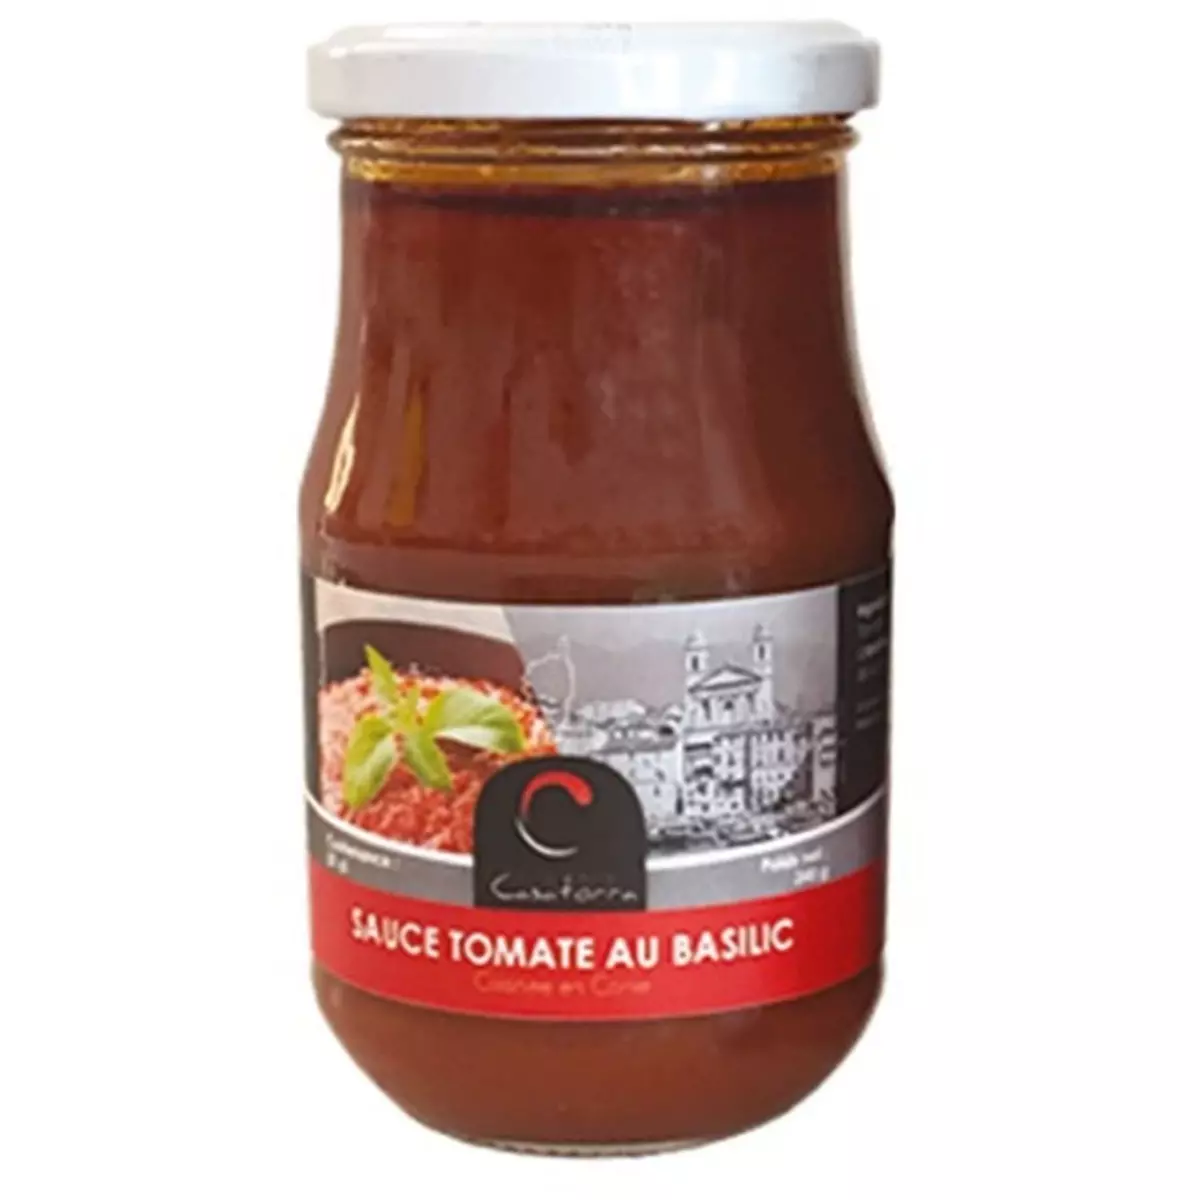 CONSERVERIE DE CASATORRA Sauce tomate corse au basilic 370g